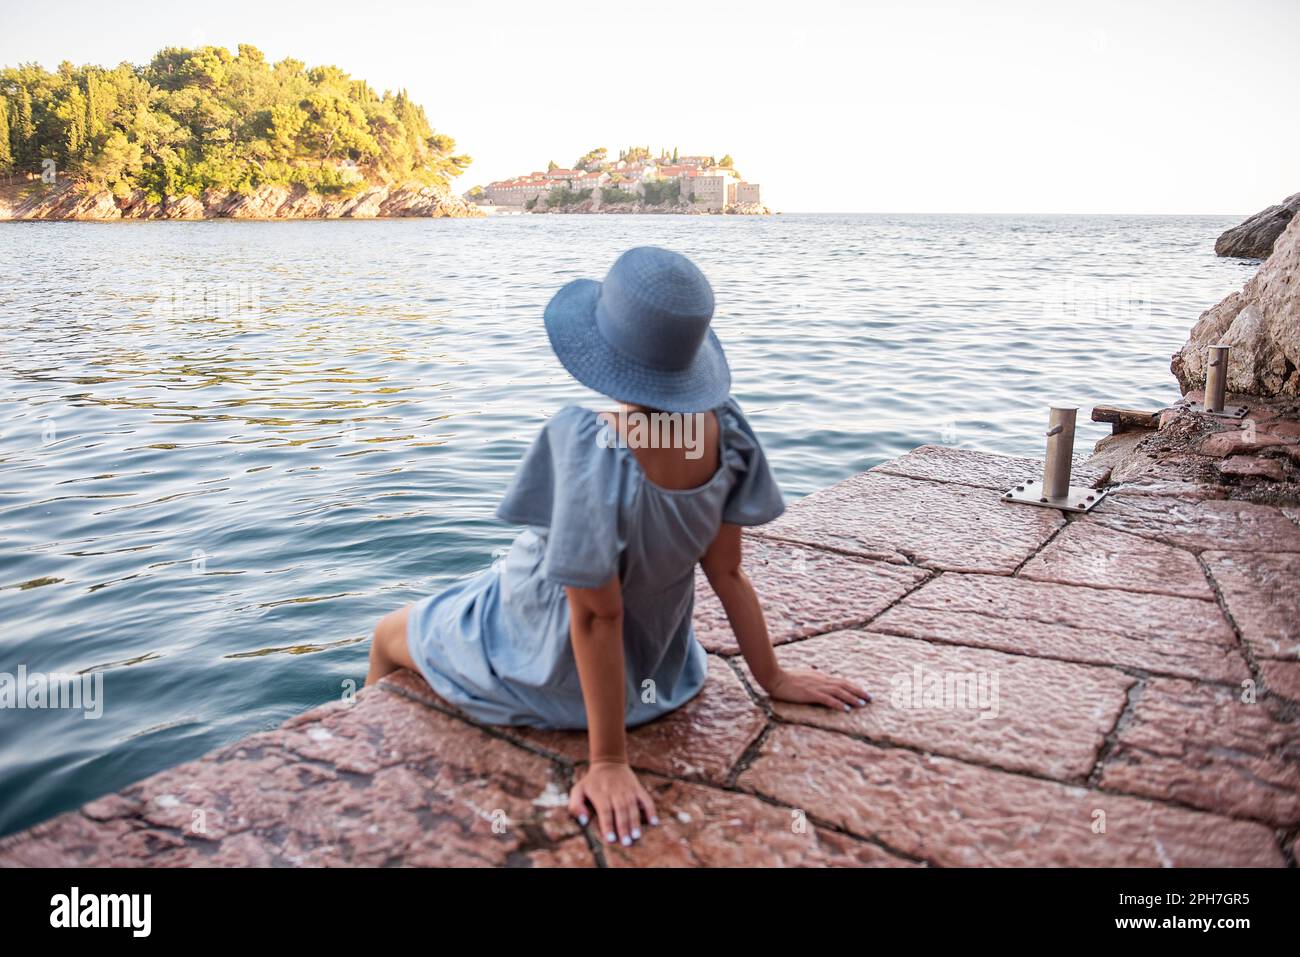 Schwangere, gesichtslose Reisende in Jeanskleidung, blauer Strohhut sitzt auf dem Meer und blickt bei Sonnenuntergang auf die Insel Sveti Stefan in Montenegro. Touristen Stockfoto